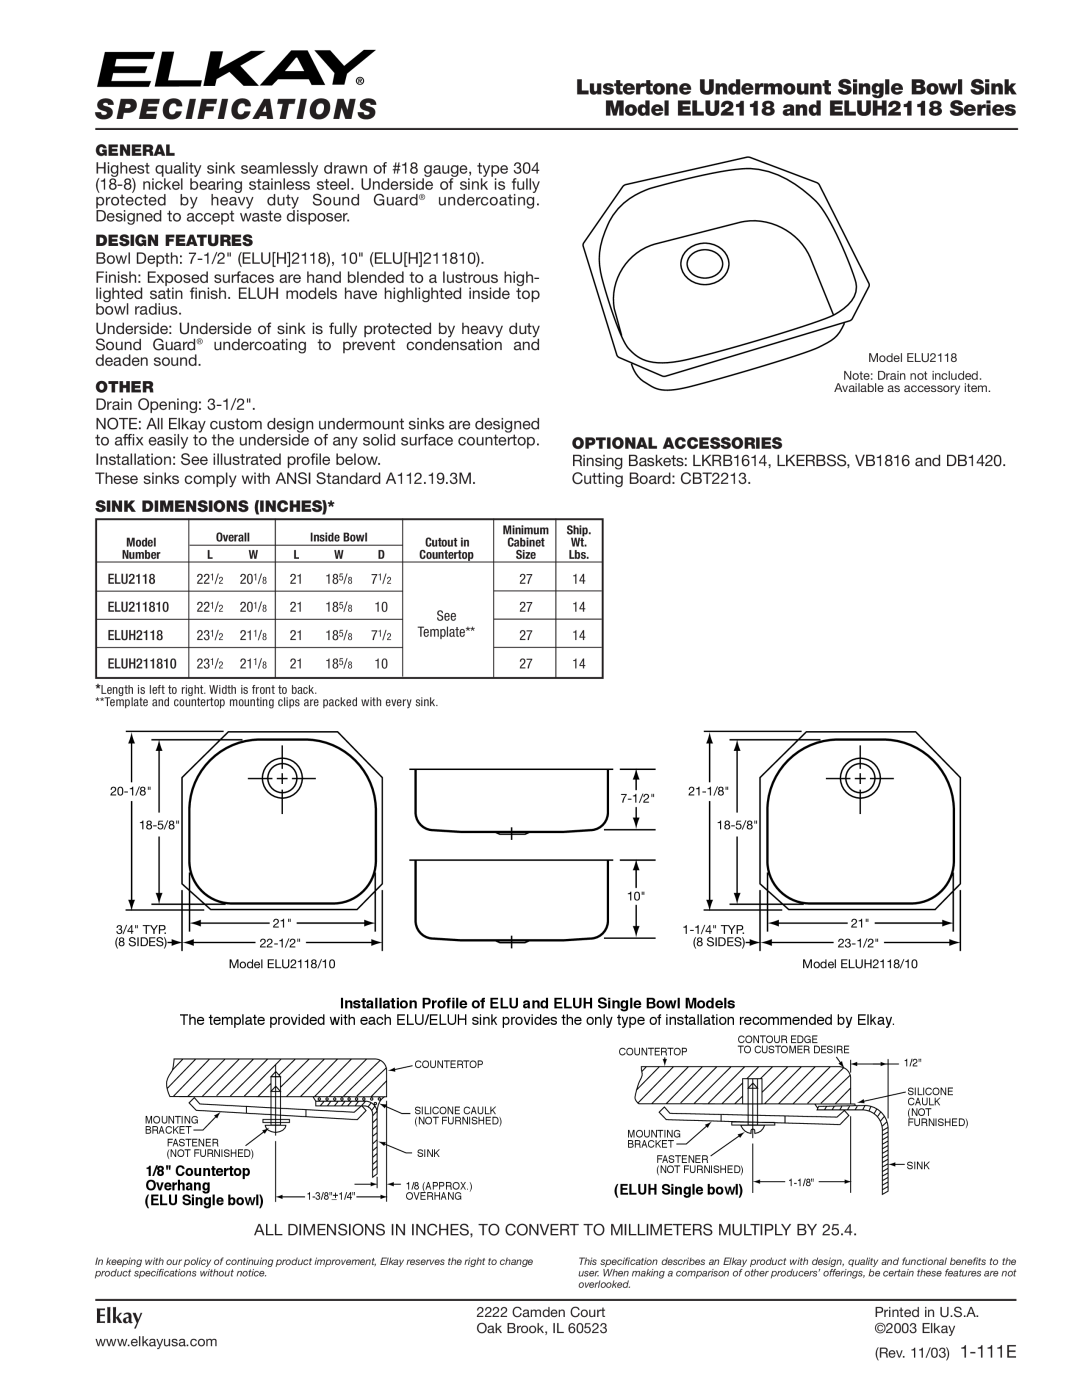 Elkay ELUH2118 Series specifications Specifications, Lustertone Undermount Single Bowl Sink, Elkay, General, Other 